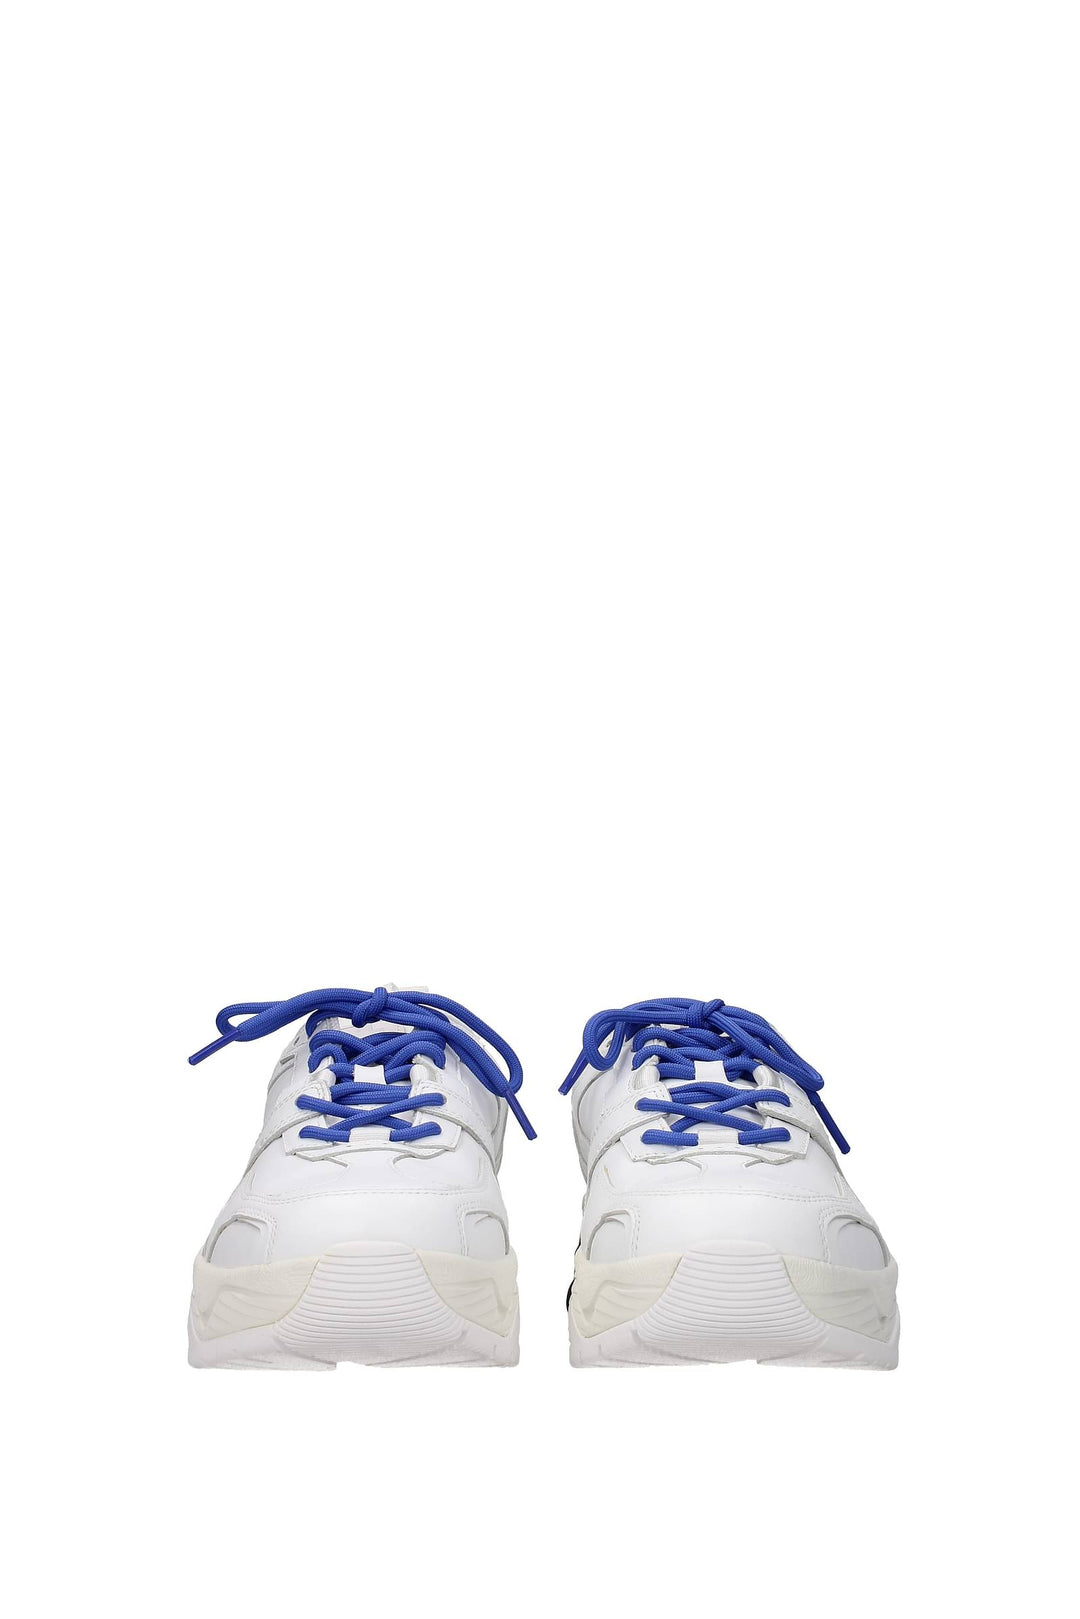 Sneakers Vibram Pelle Bianco Blu - Marcelo Burlon - Uomo